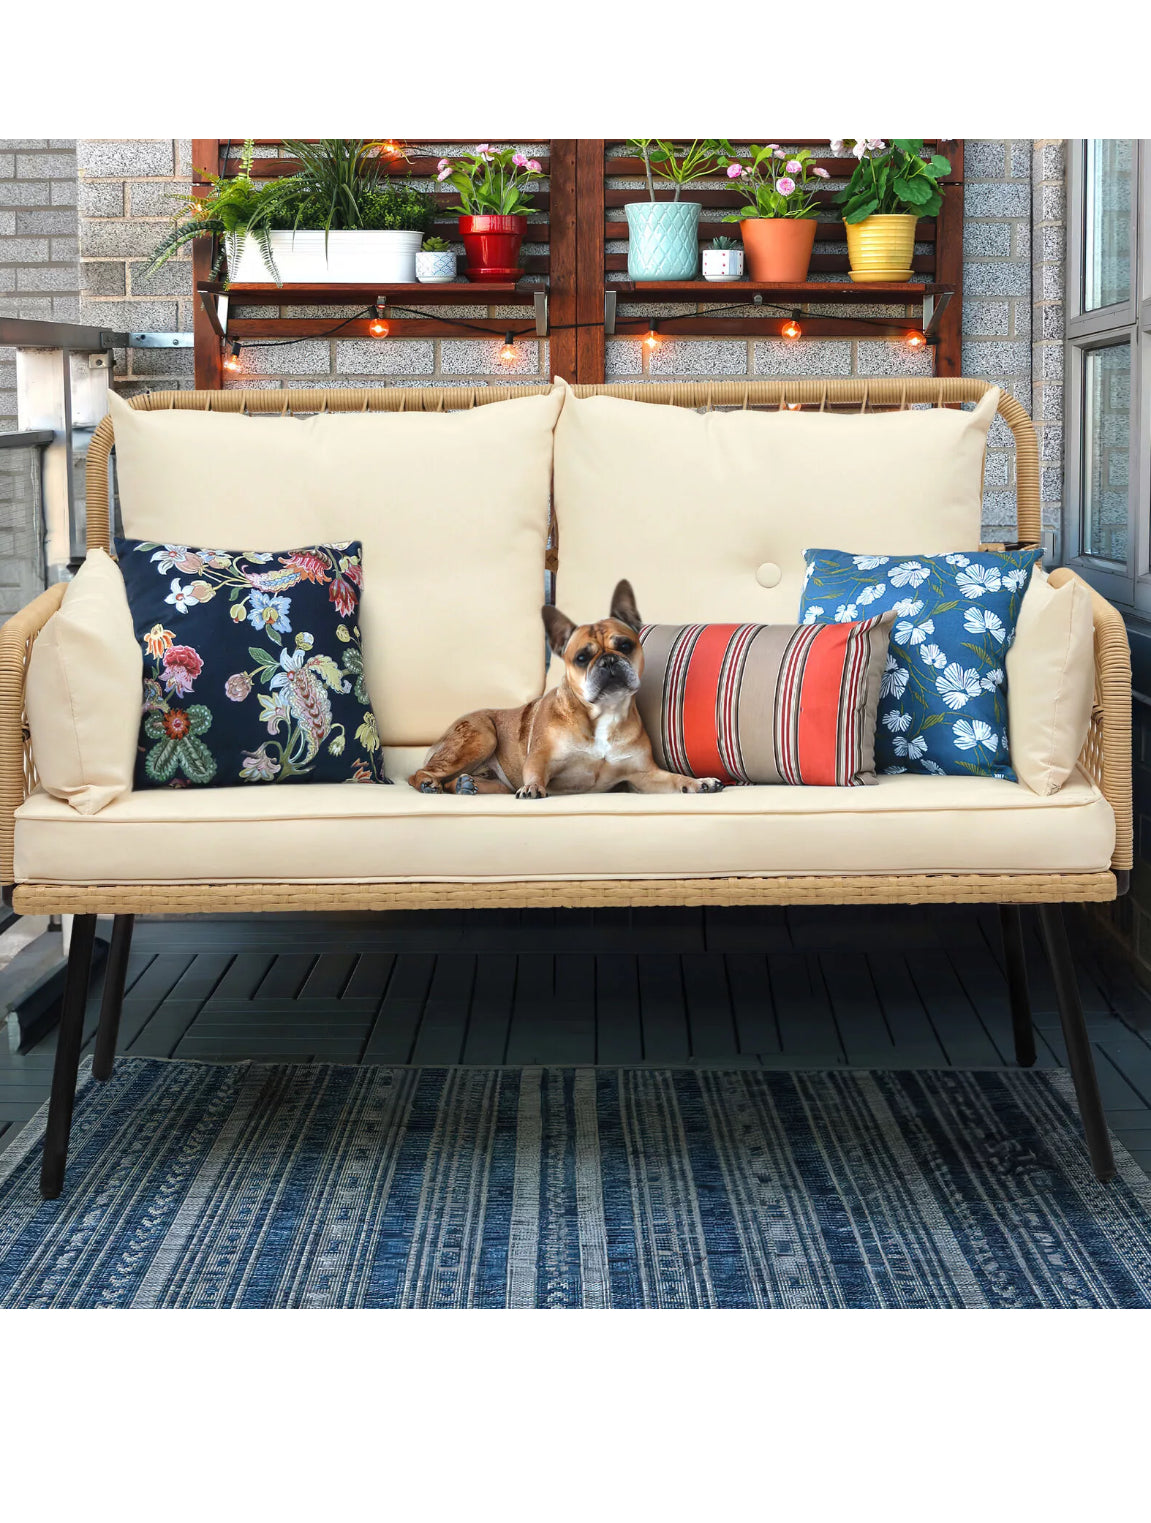 Wicker Patio Love Seat for Sunroom Deck or Garden - Suitable for Indoor/ Outdoor